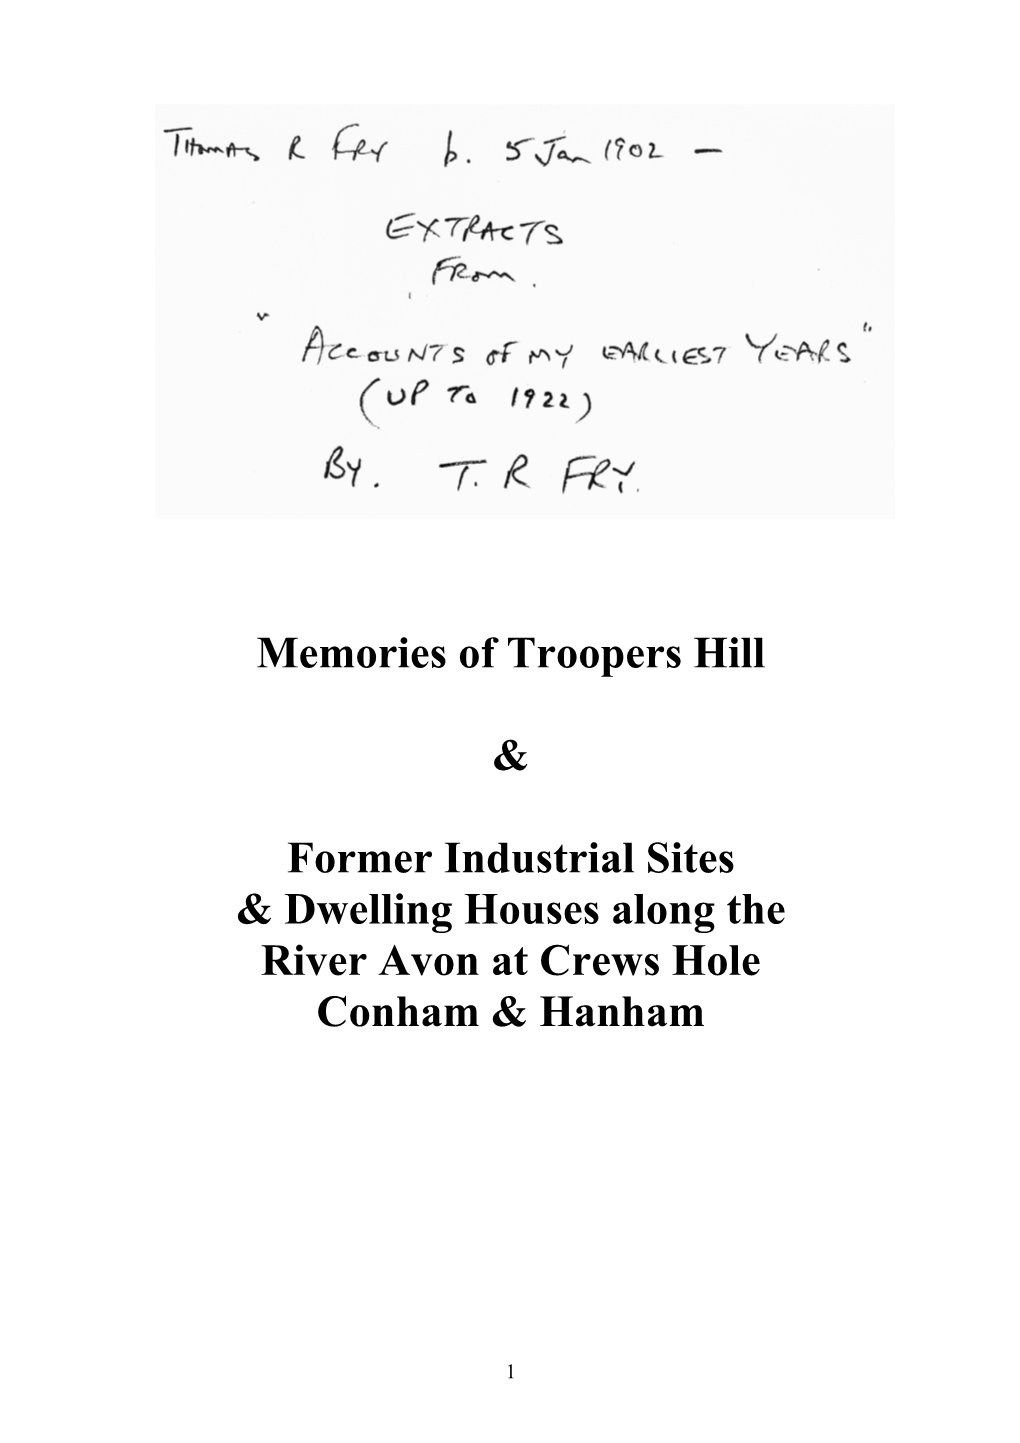 Memories of Troopers Hill, Crews Hole, Conham & Hanham